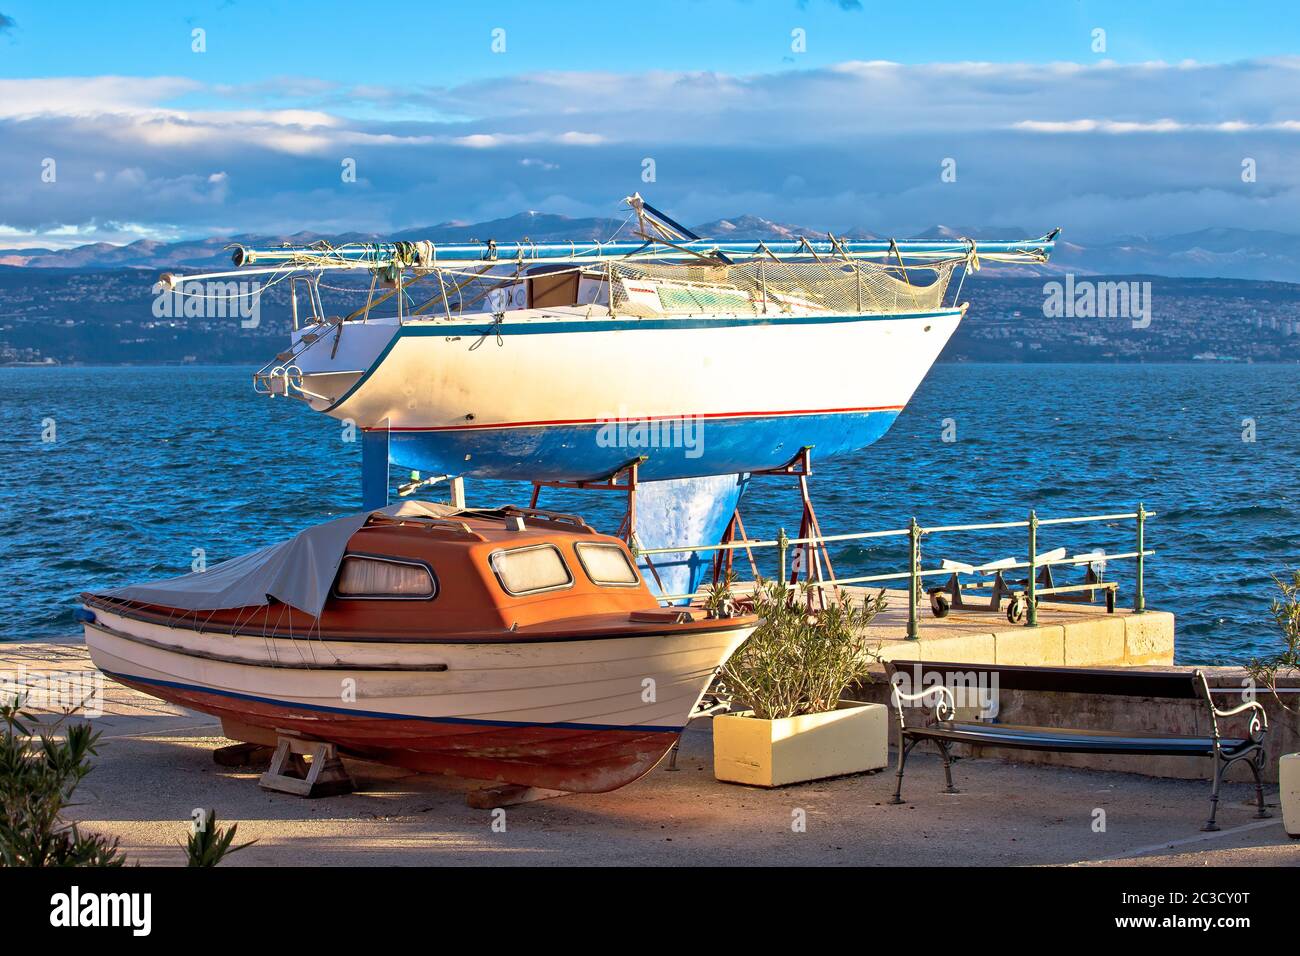 Segelboot und kleines Boot auf Trockendock am Meer Stockfoto